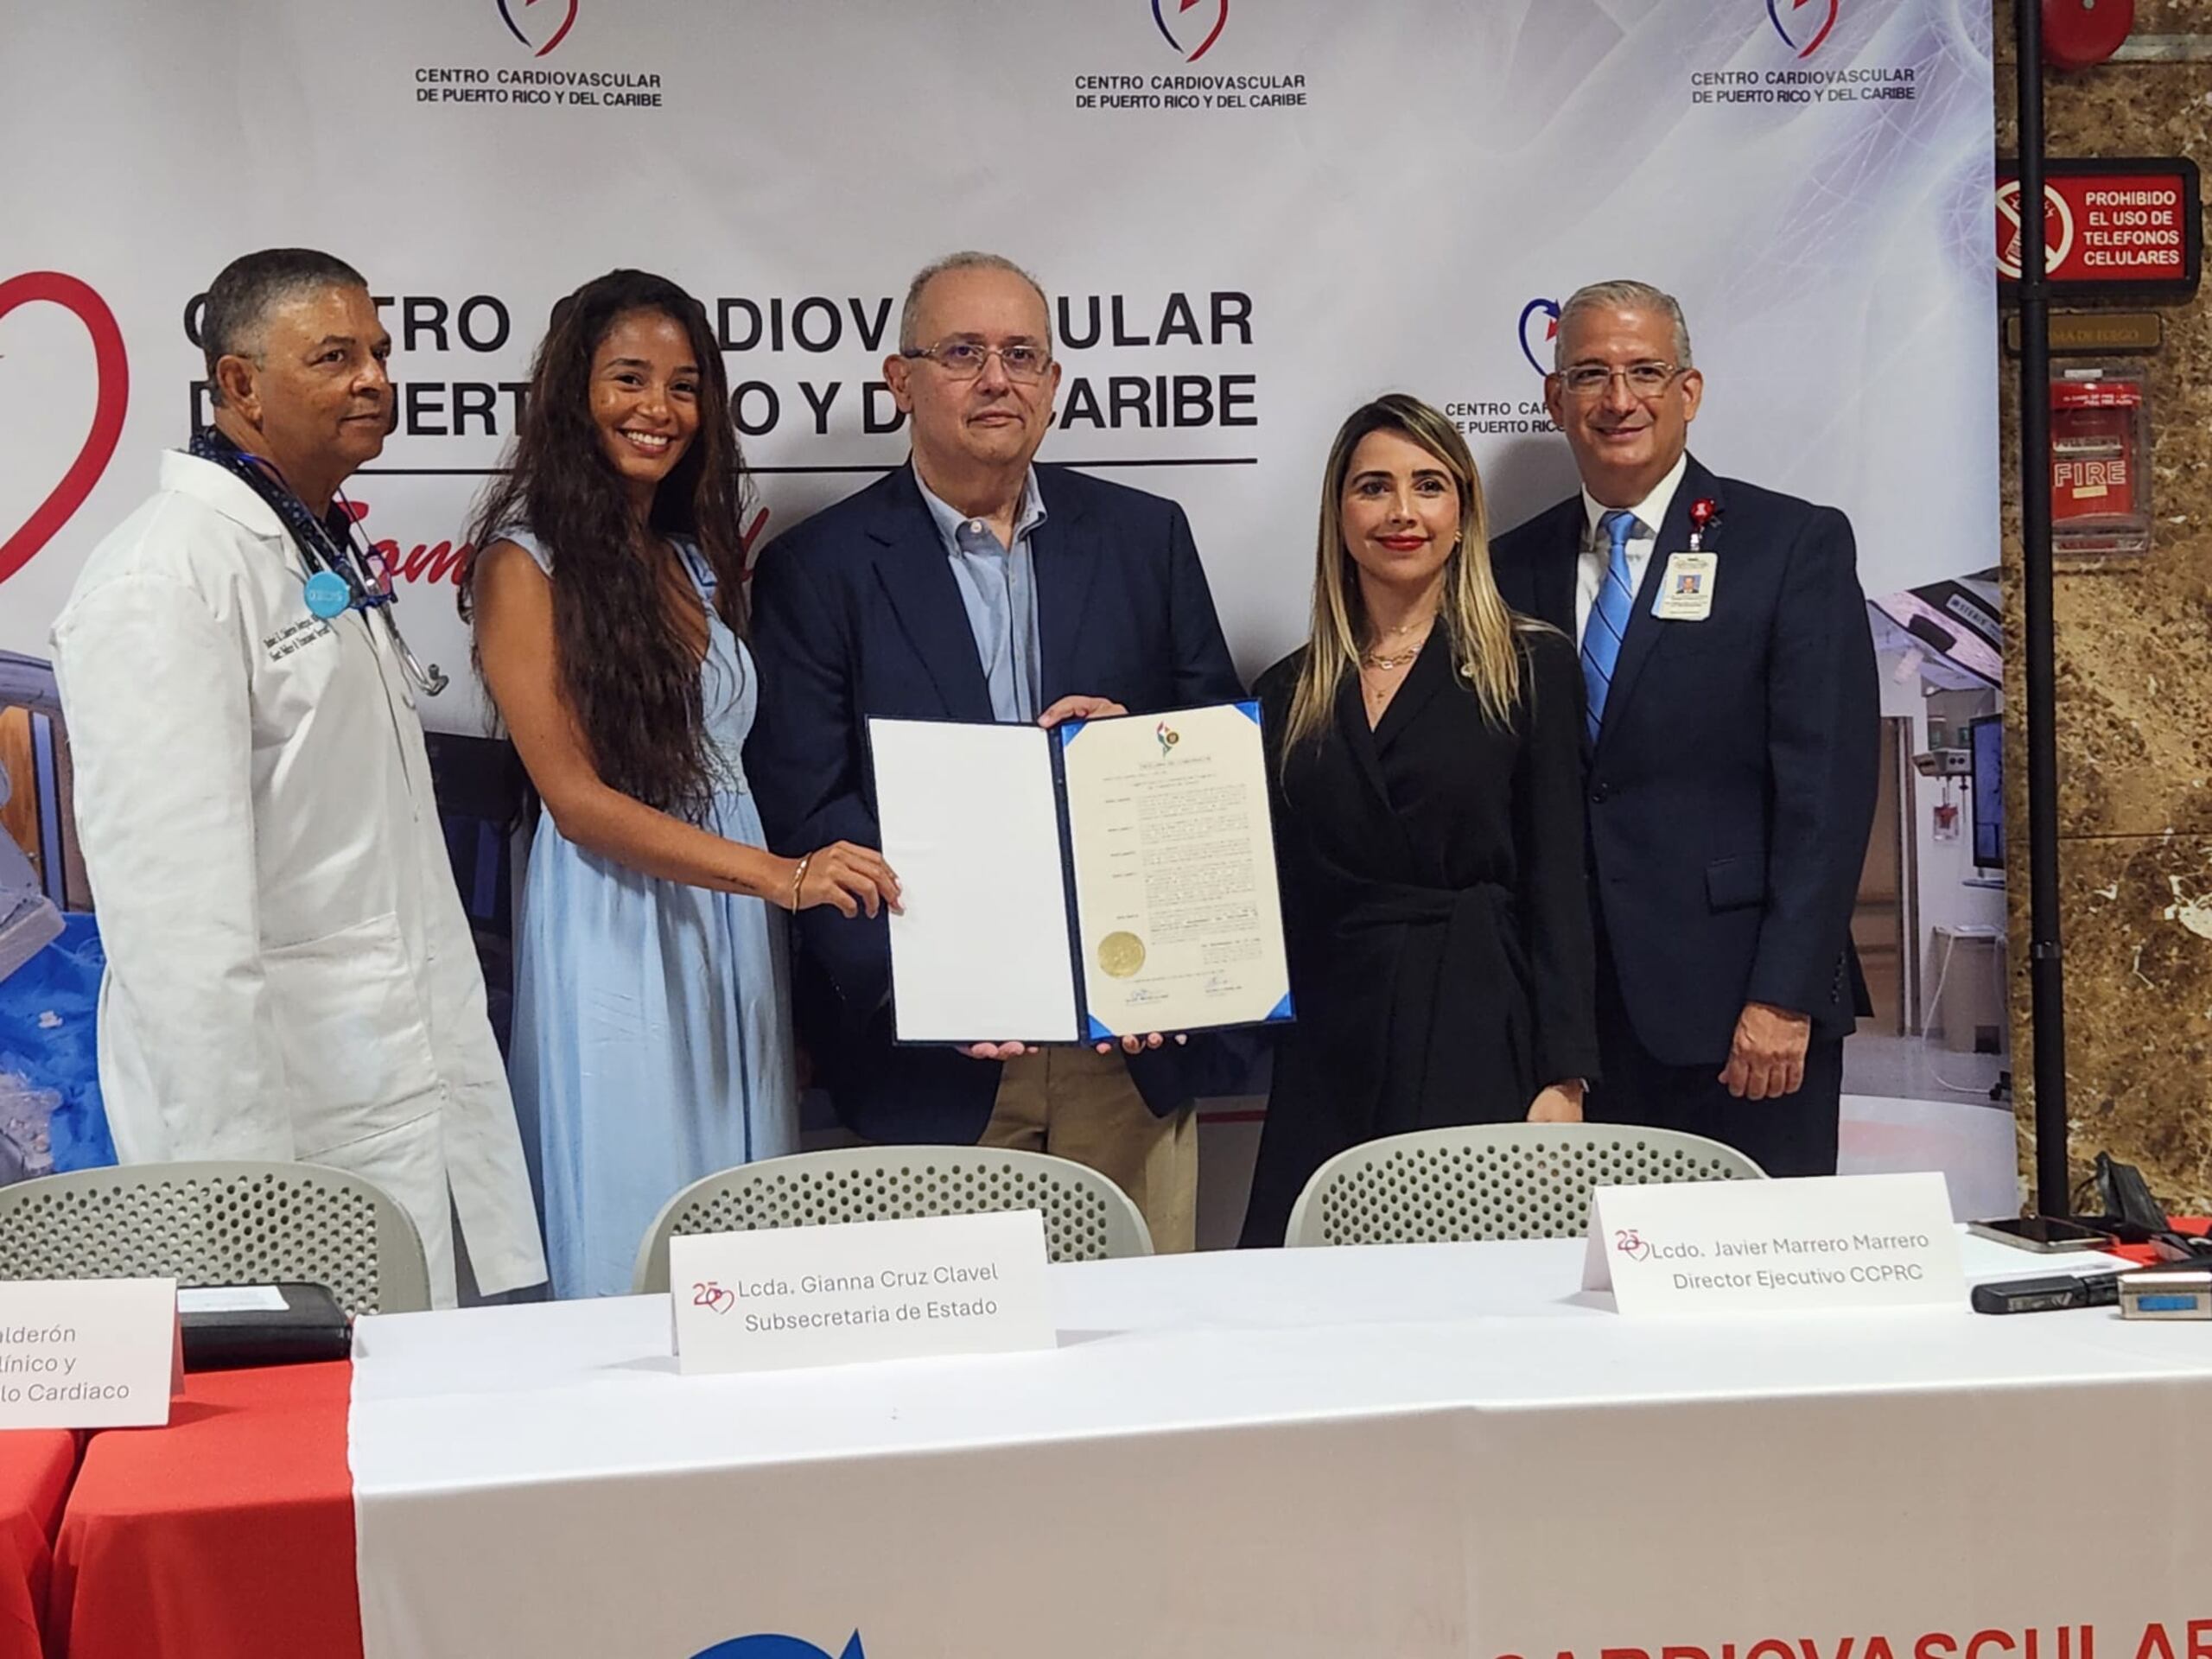 El doctor Iván González Cancel, cirujano cardiovascular y de trasplantes, y director del Programa, al centro, junto a Tania y demás galenos y directivos del Hospital Cardiovascular.